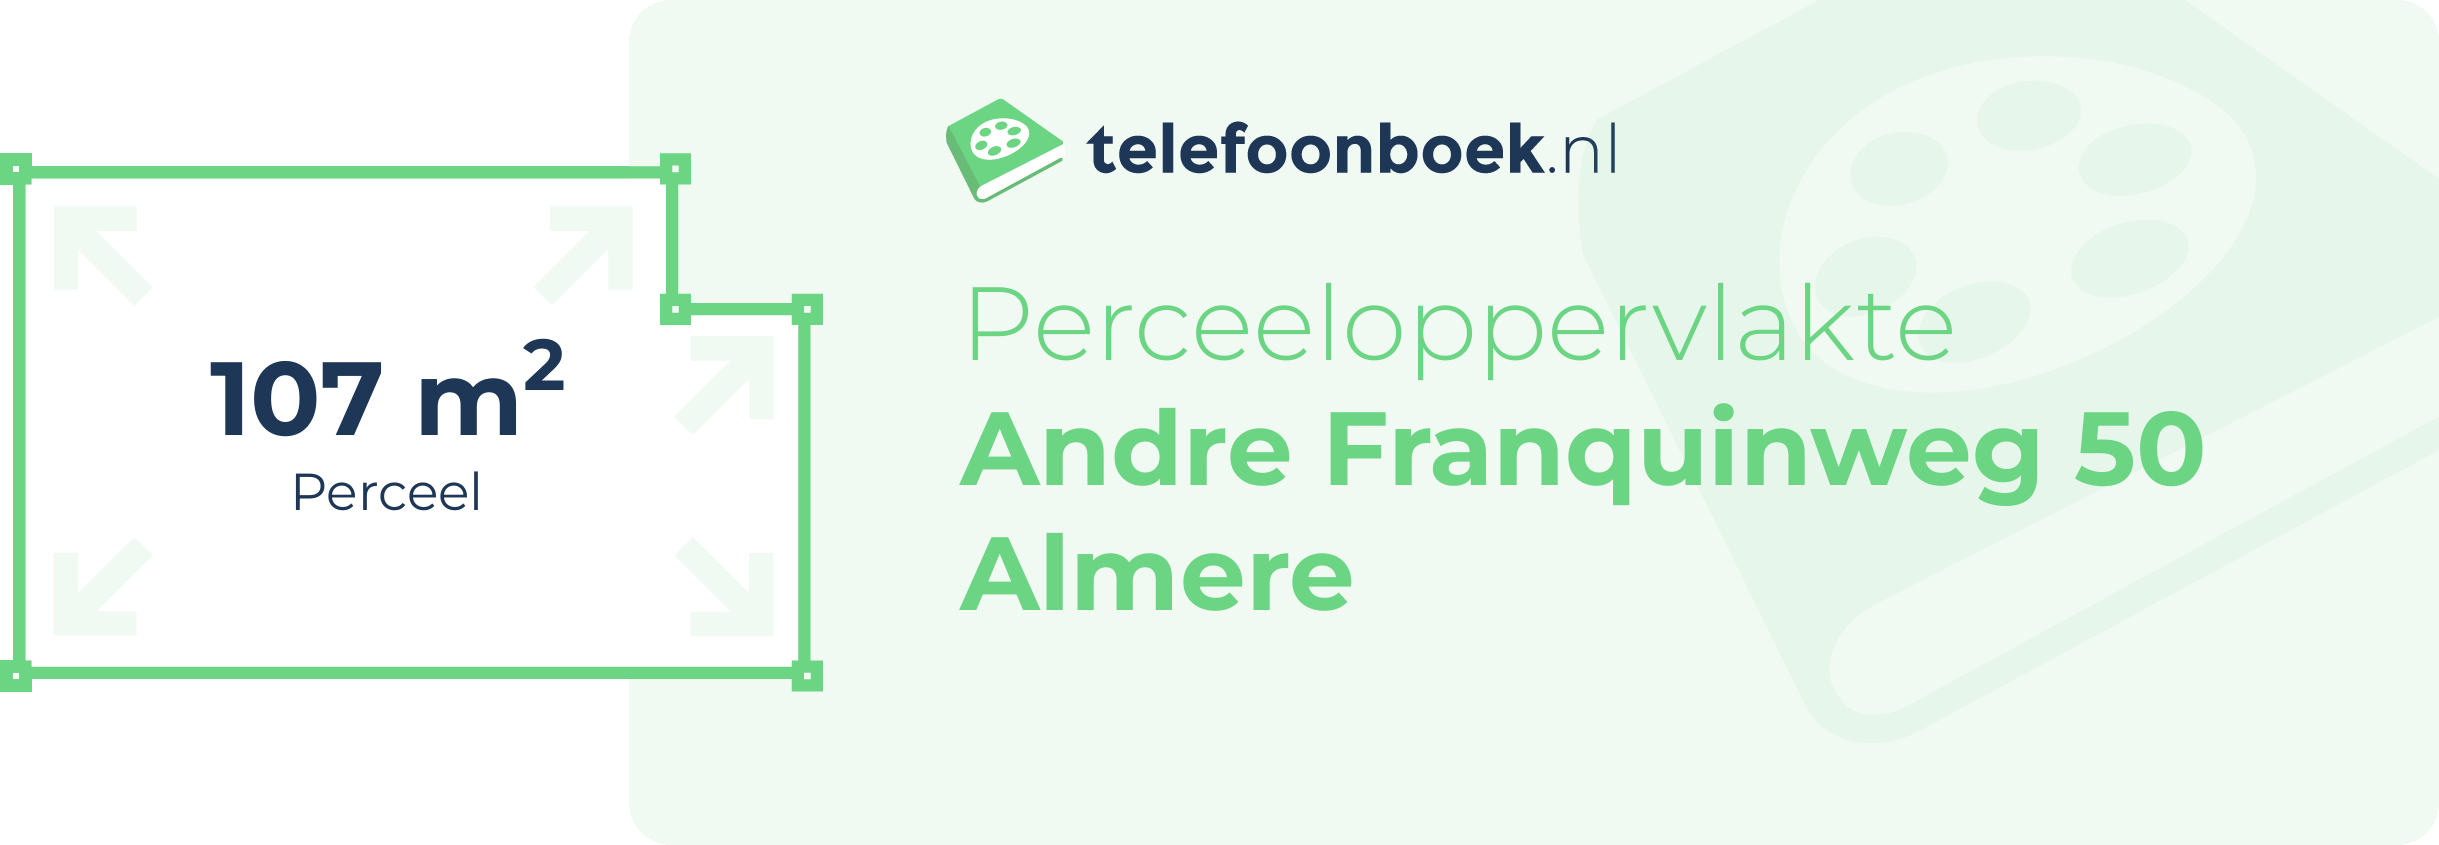 Perceeloppervlakte Andre Franquinweg 50 Almere